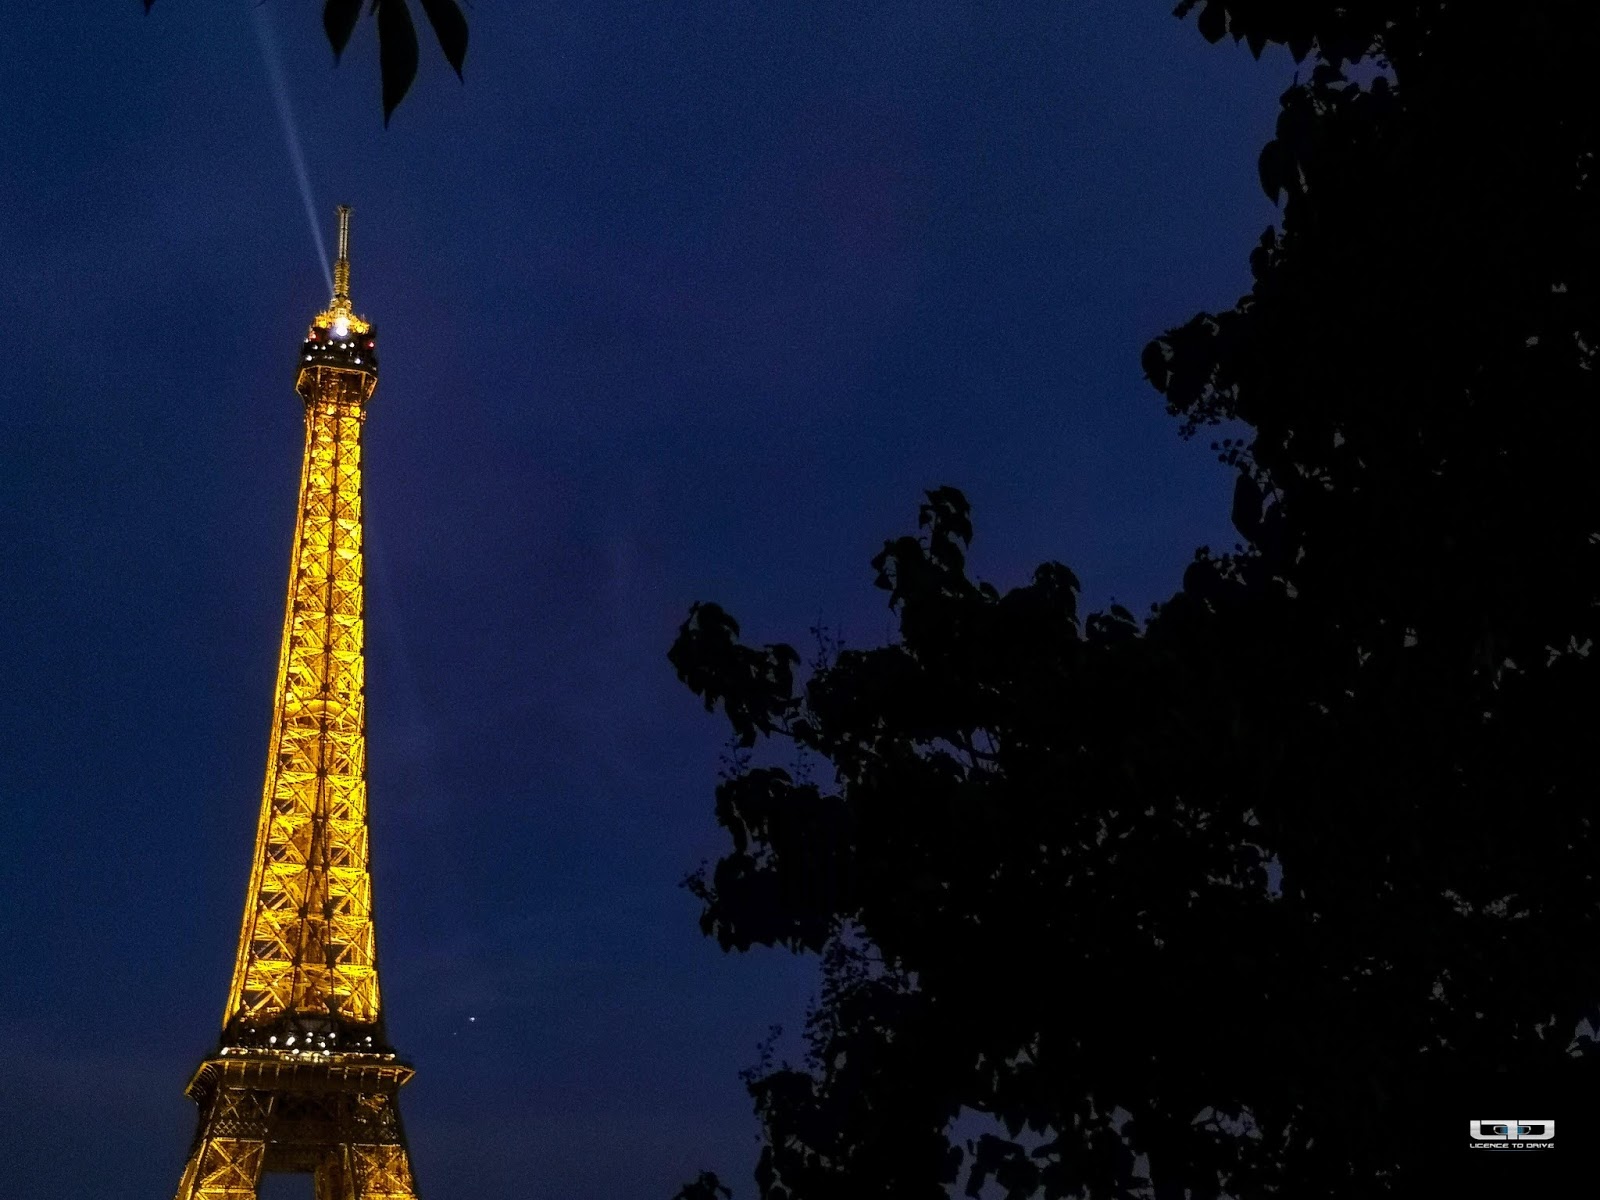 Eiffel Tower by night